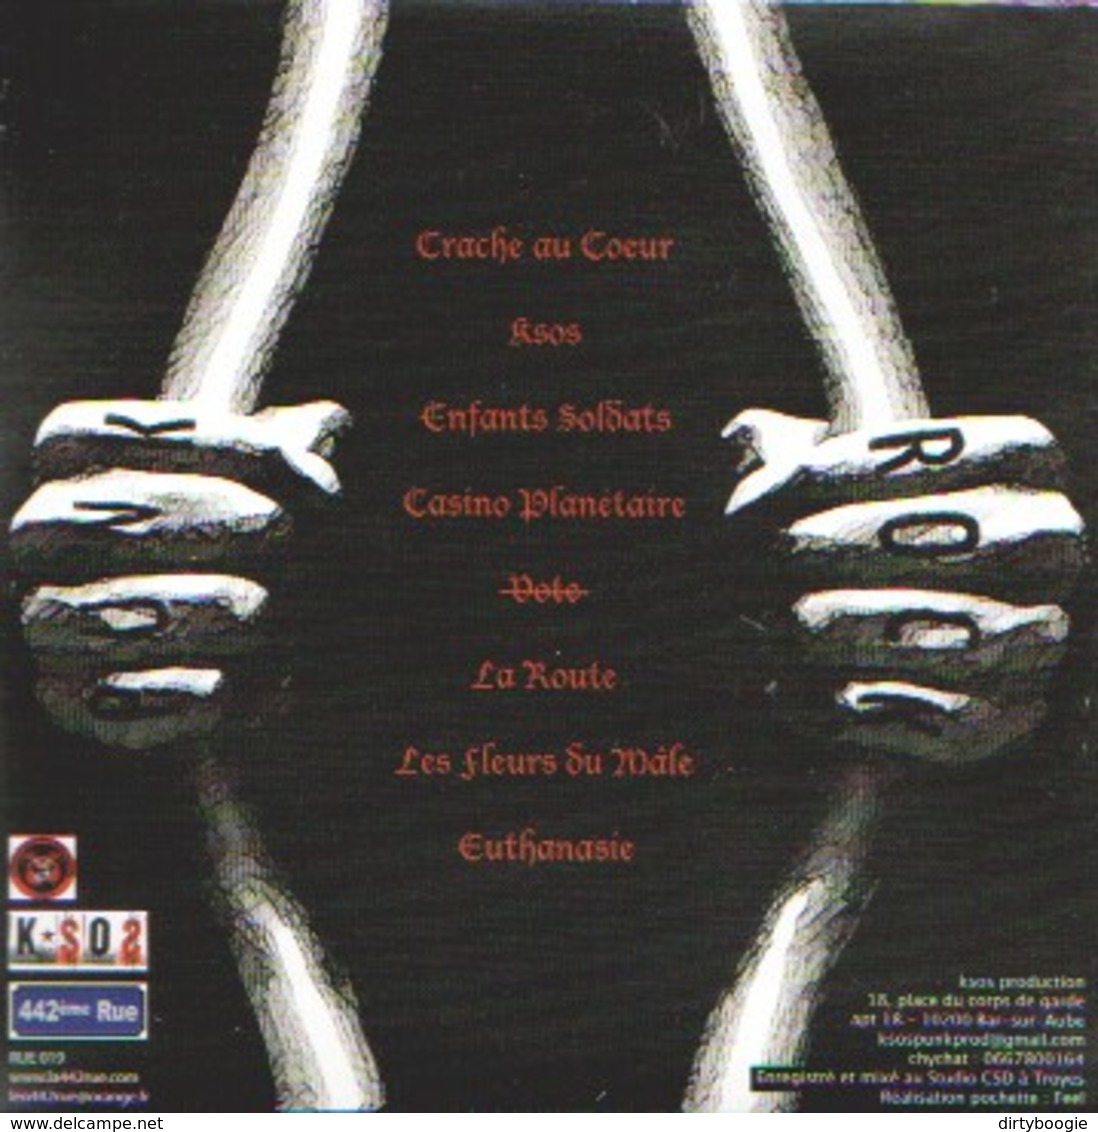 K-SOS - Soif De Libertés - CD - ANARCHO PUNK - 442ème RUE - Punk